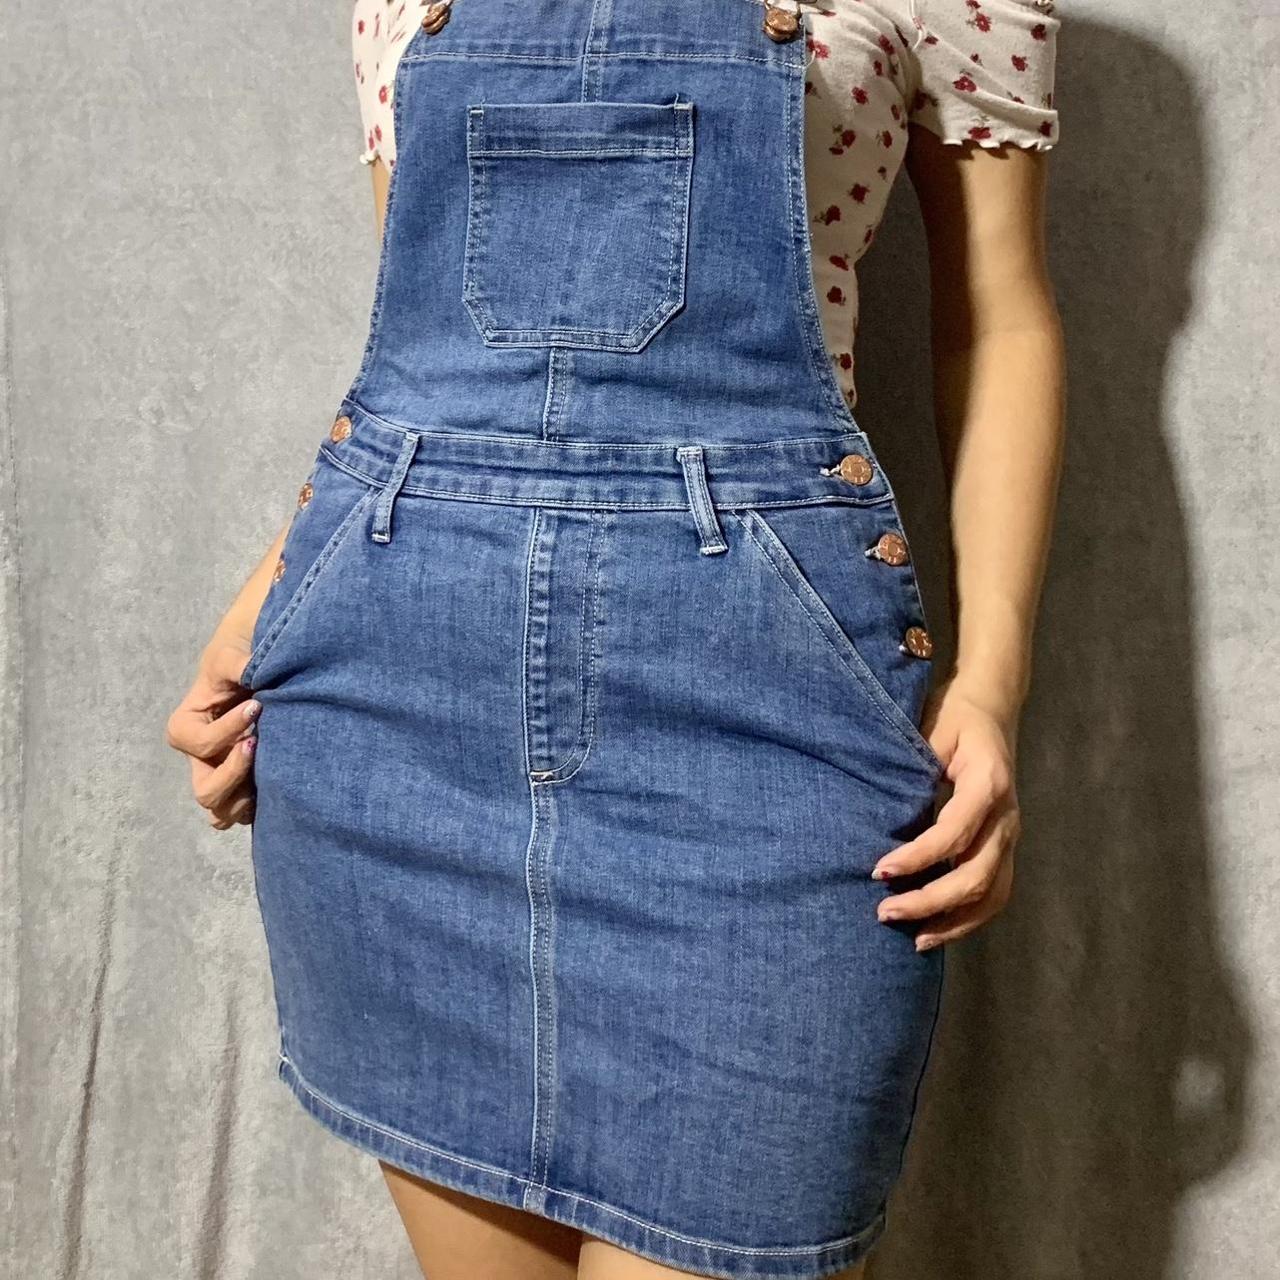 Guess Denim Skirt Overalls : Size M ౨ৎ - Depop